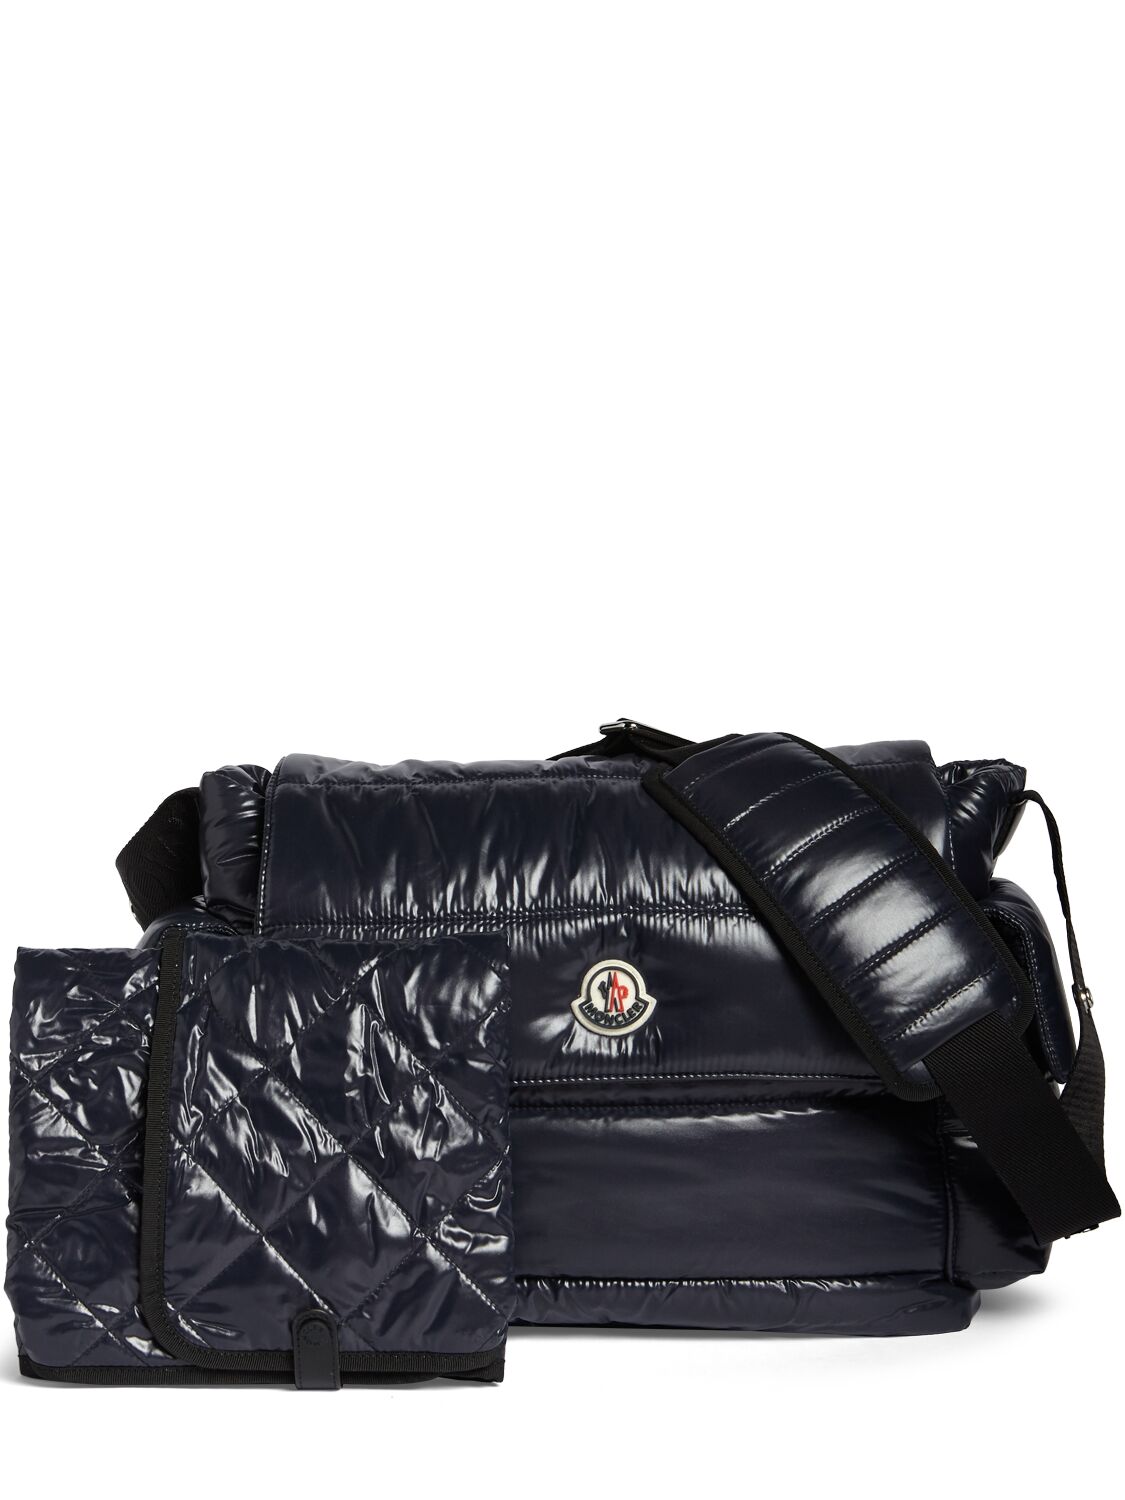 Moncler Kids' Shiny Nylon Changing Bag & Mat In Black